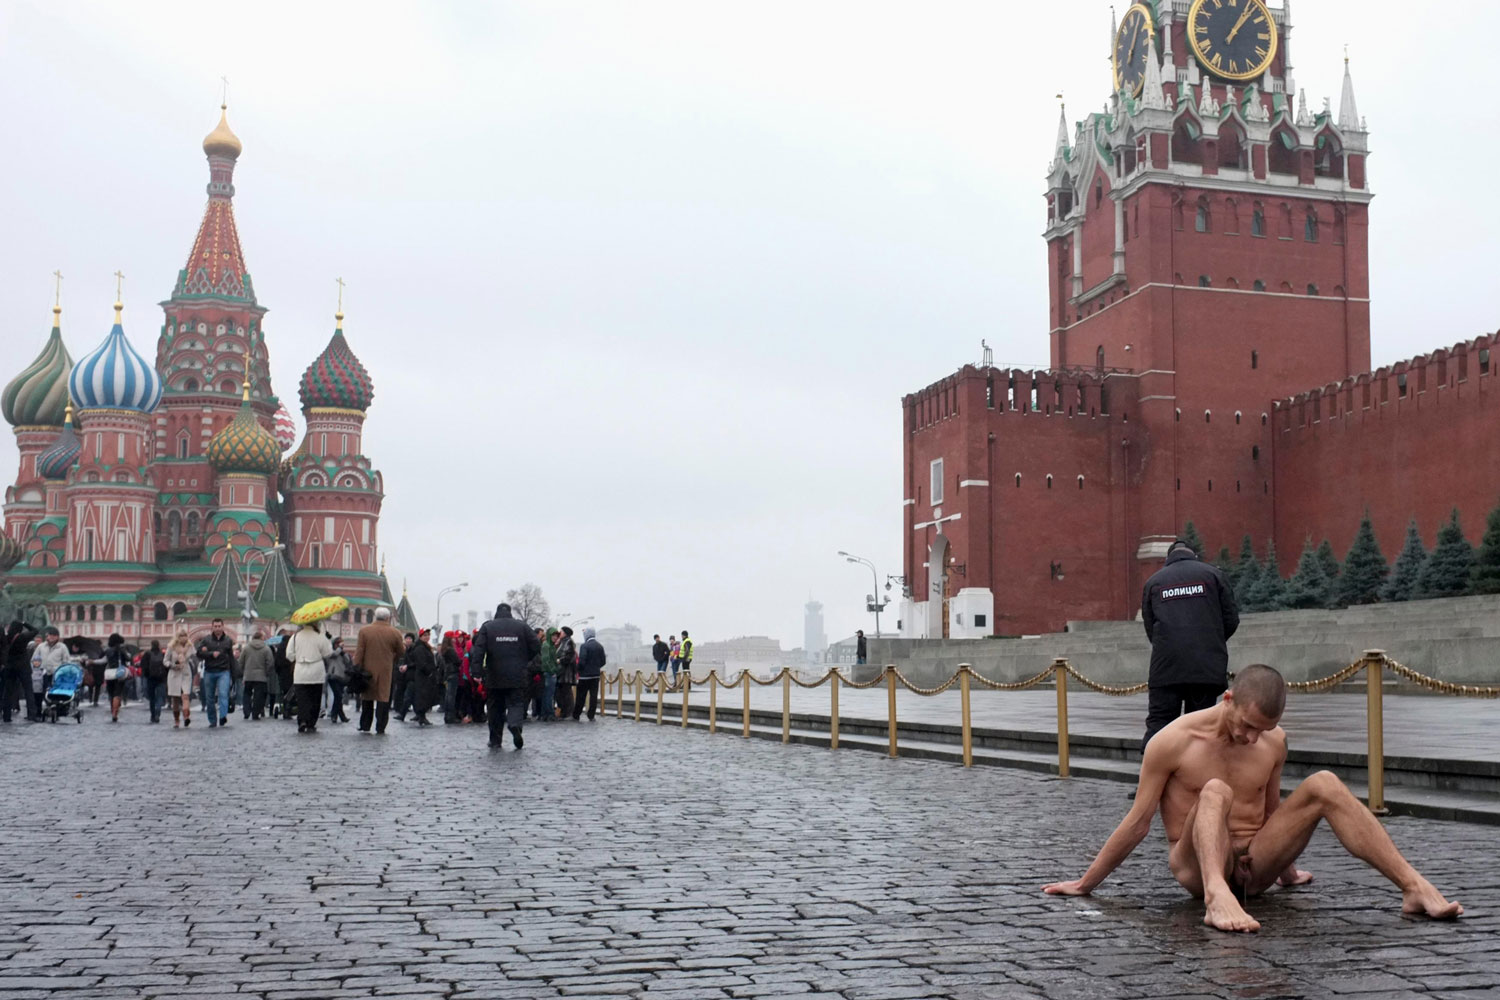 Un pintor clava sus testículos en Plaza Roja de Moscú para protestar contra la indiferencia política